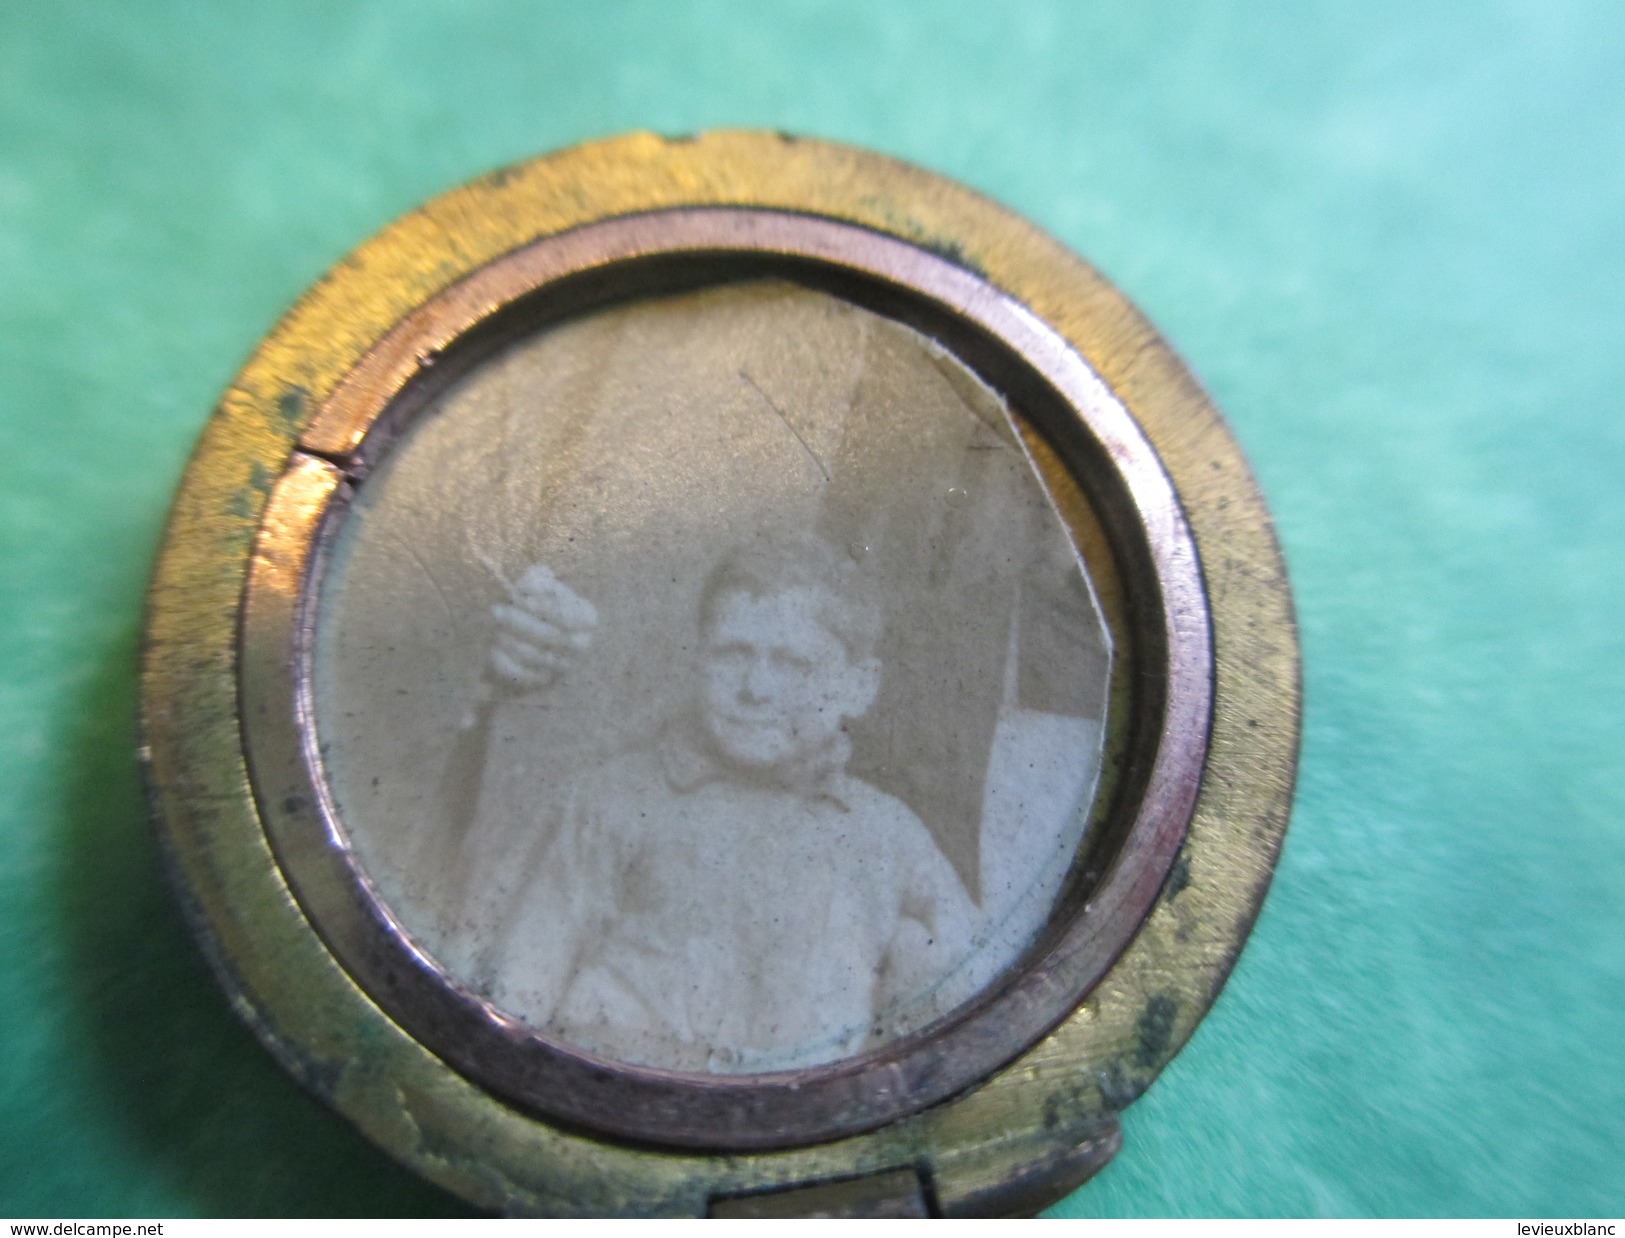 Bijou Fantaisie Ancien/Médaille/2 Photos à L'Intérieur/Pendentif Gousset Plaqué Or Pour Chaînette/ Vers 1914-18  BIJ28 - Colgantes